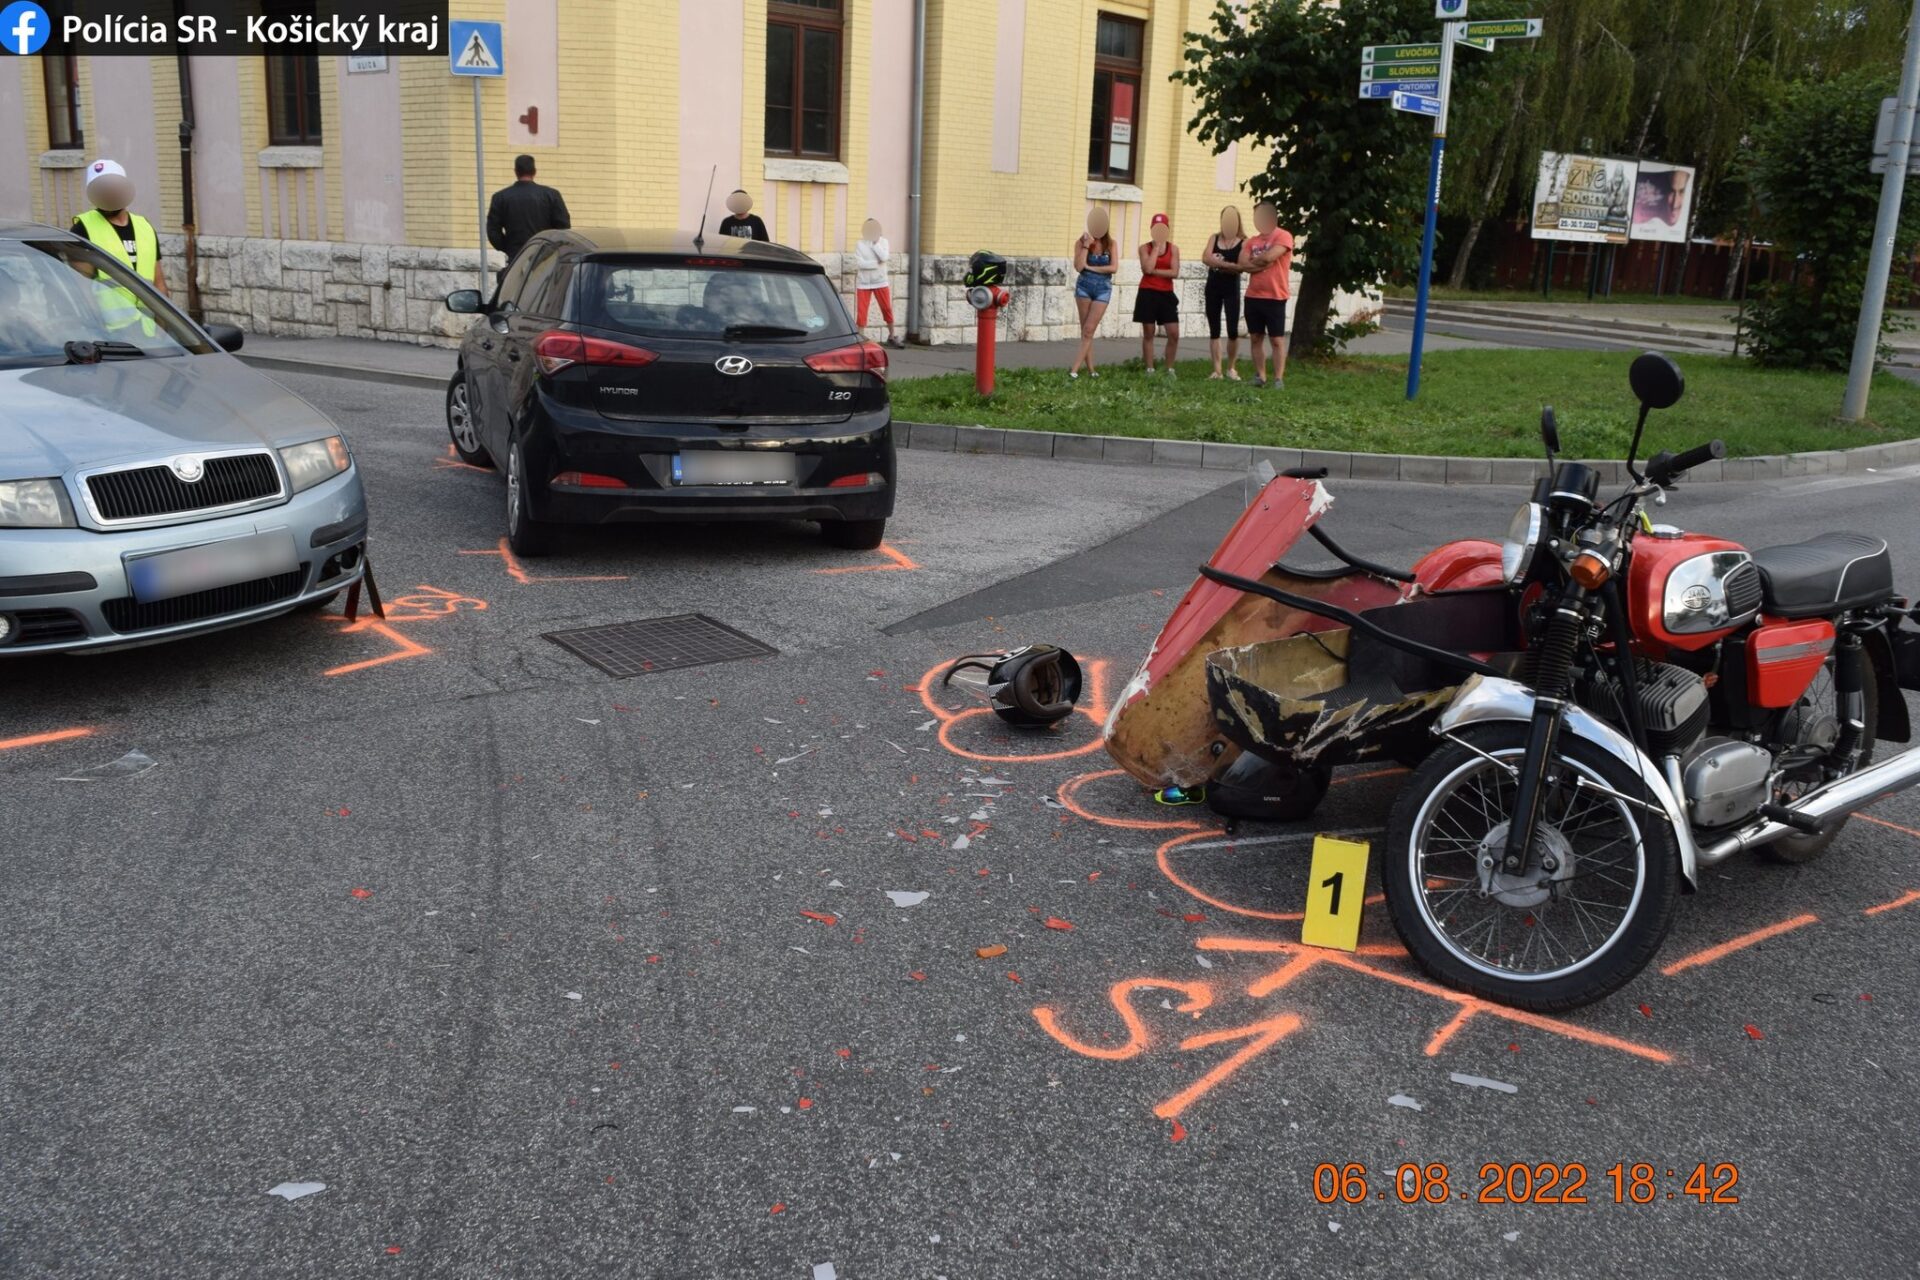 Motocykel viedol pod vplyvom alkoholu! Pri nehode sa ťažko zranilo dieťa (FOTO)